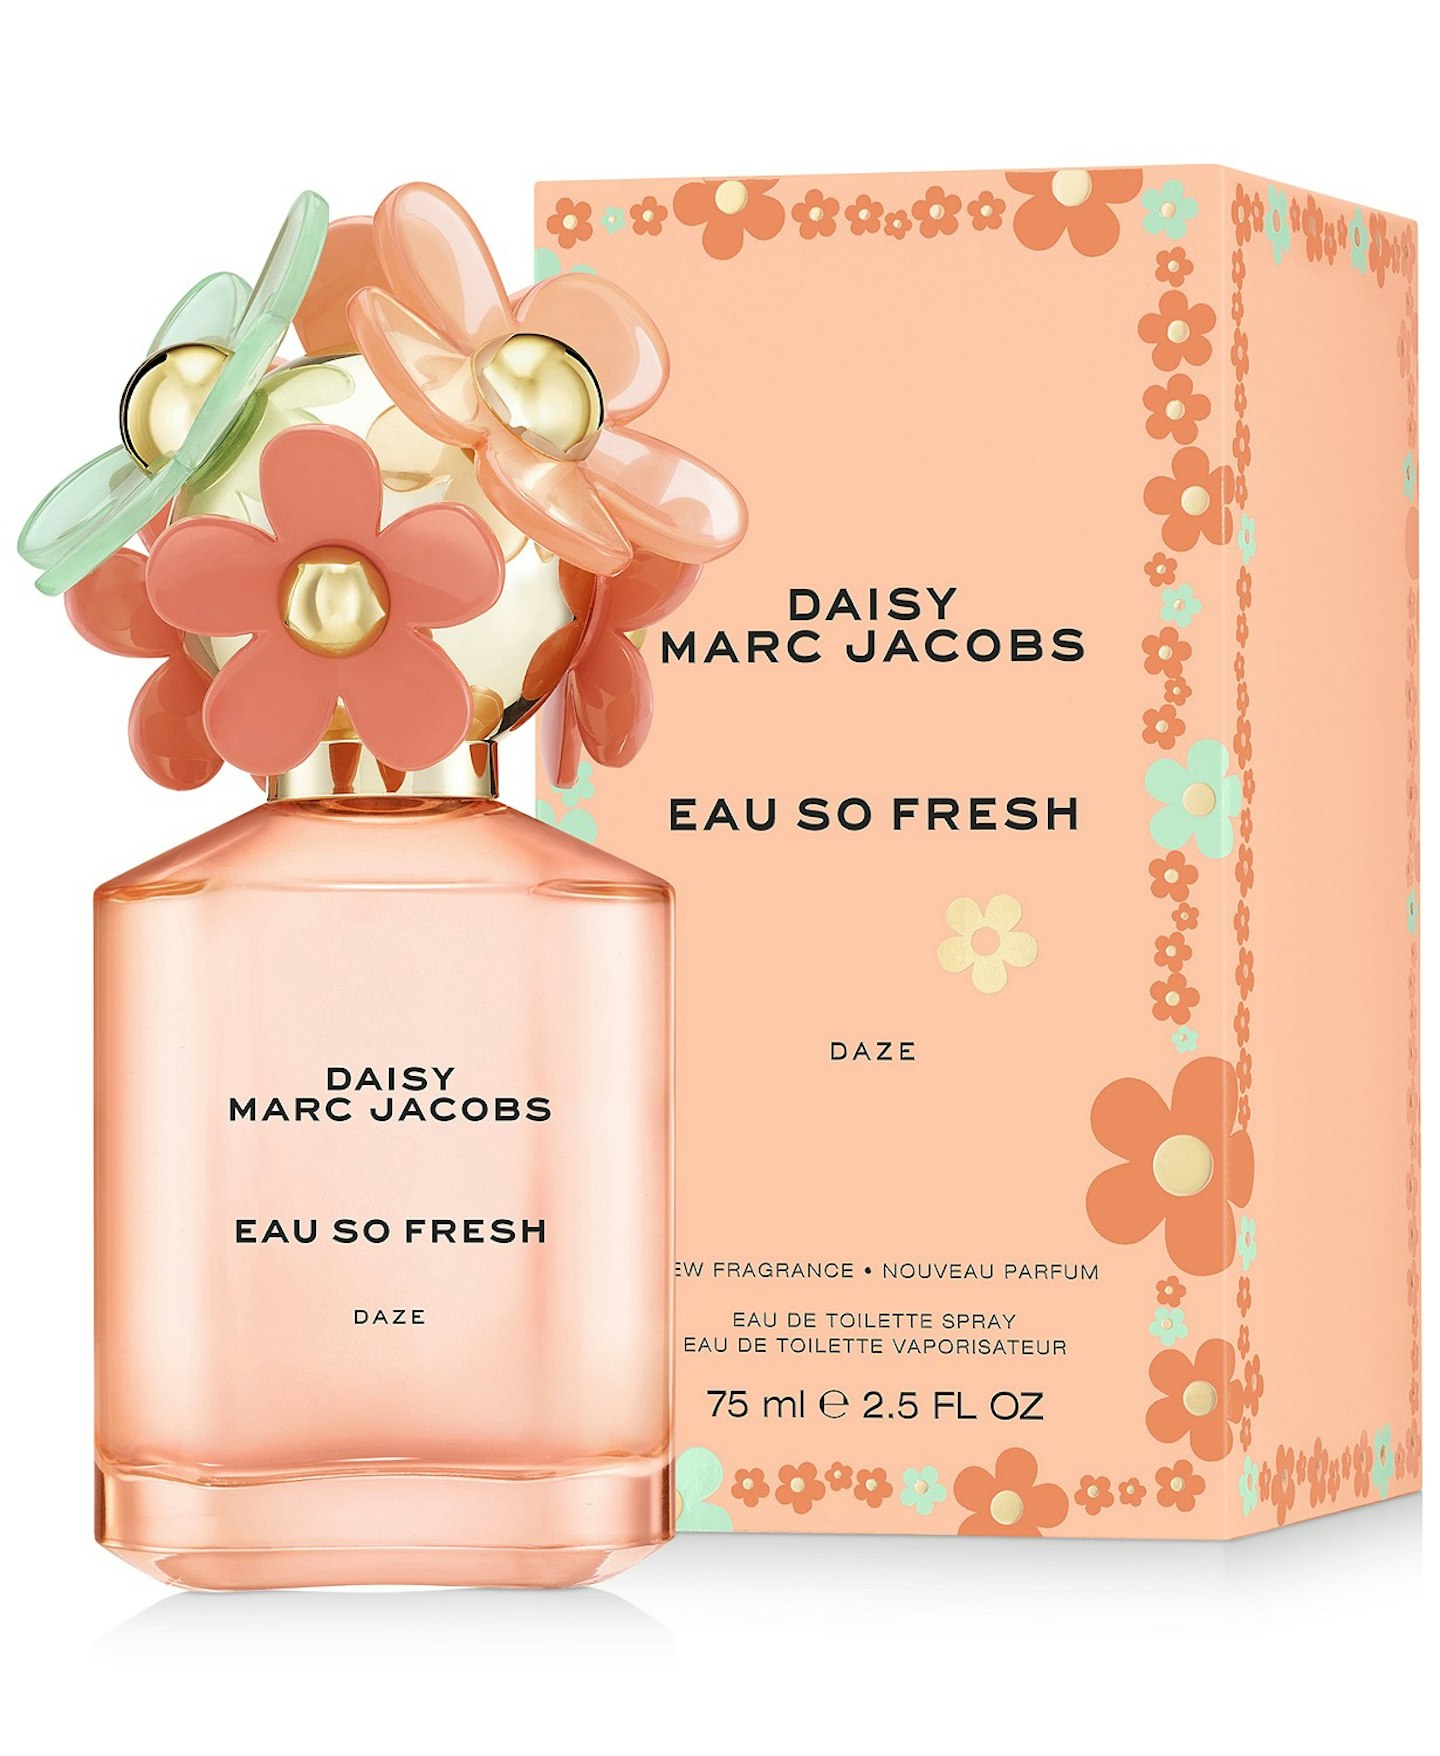 Daisy Marc Jacobs Eau So Fresh Daze- £64 for 75ml